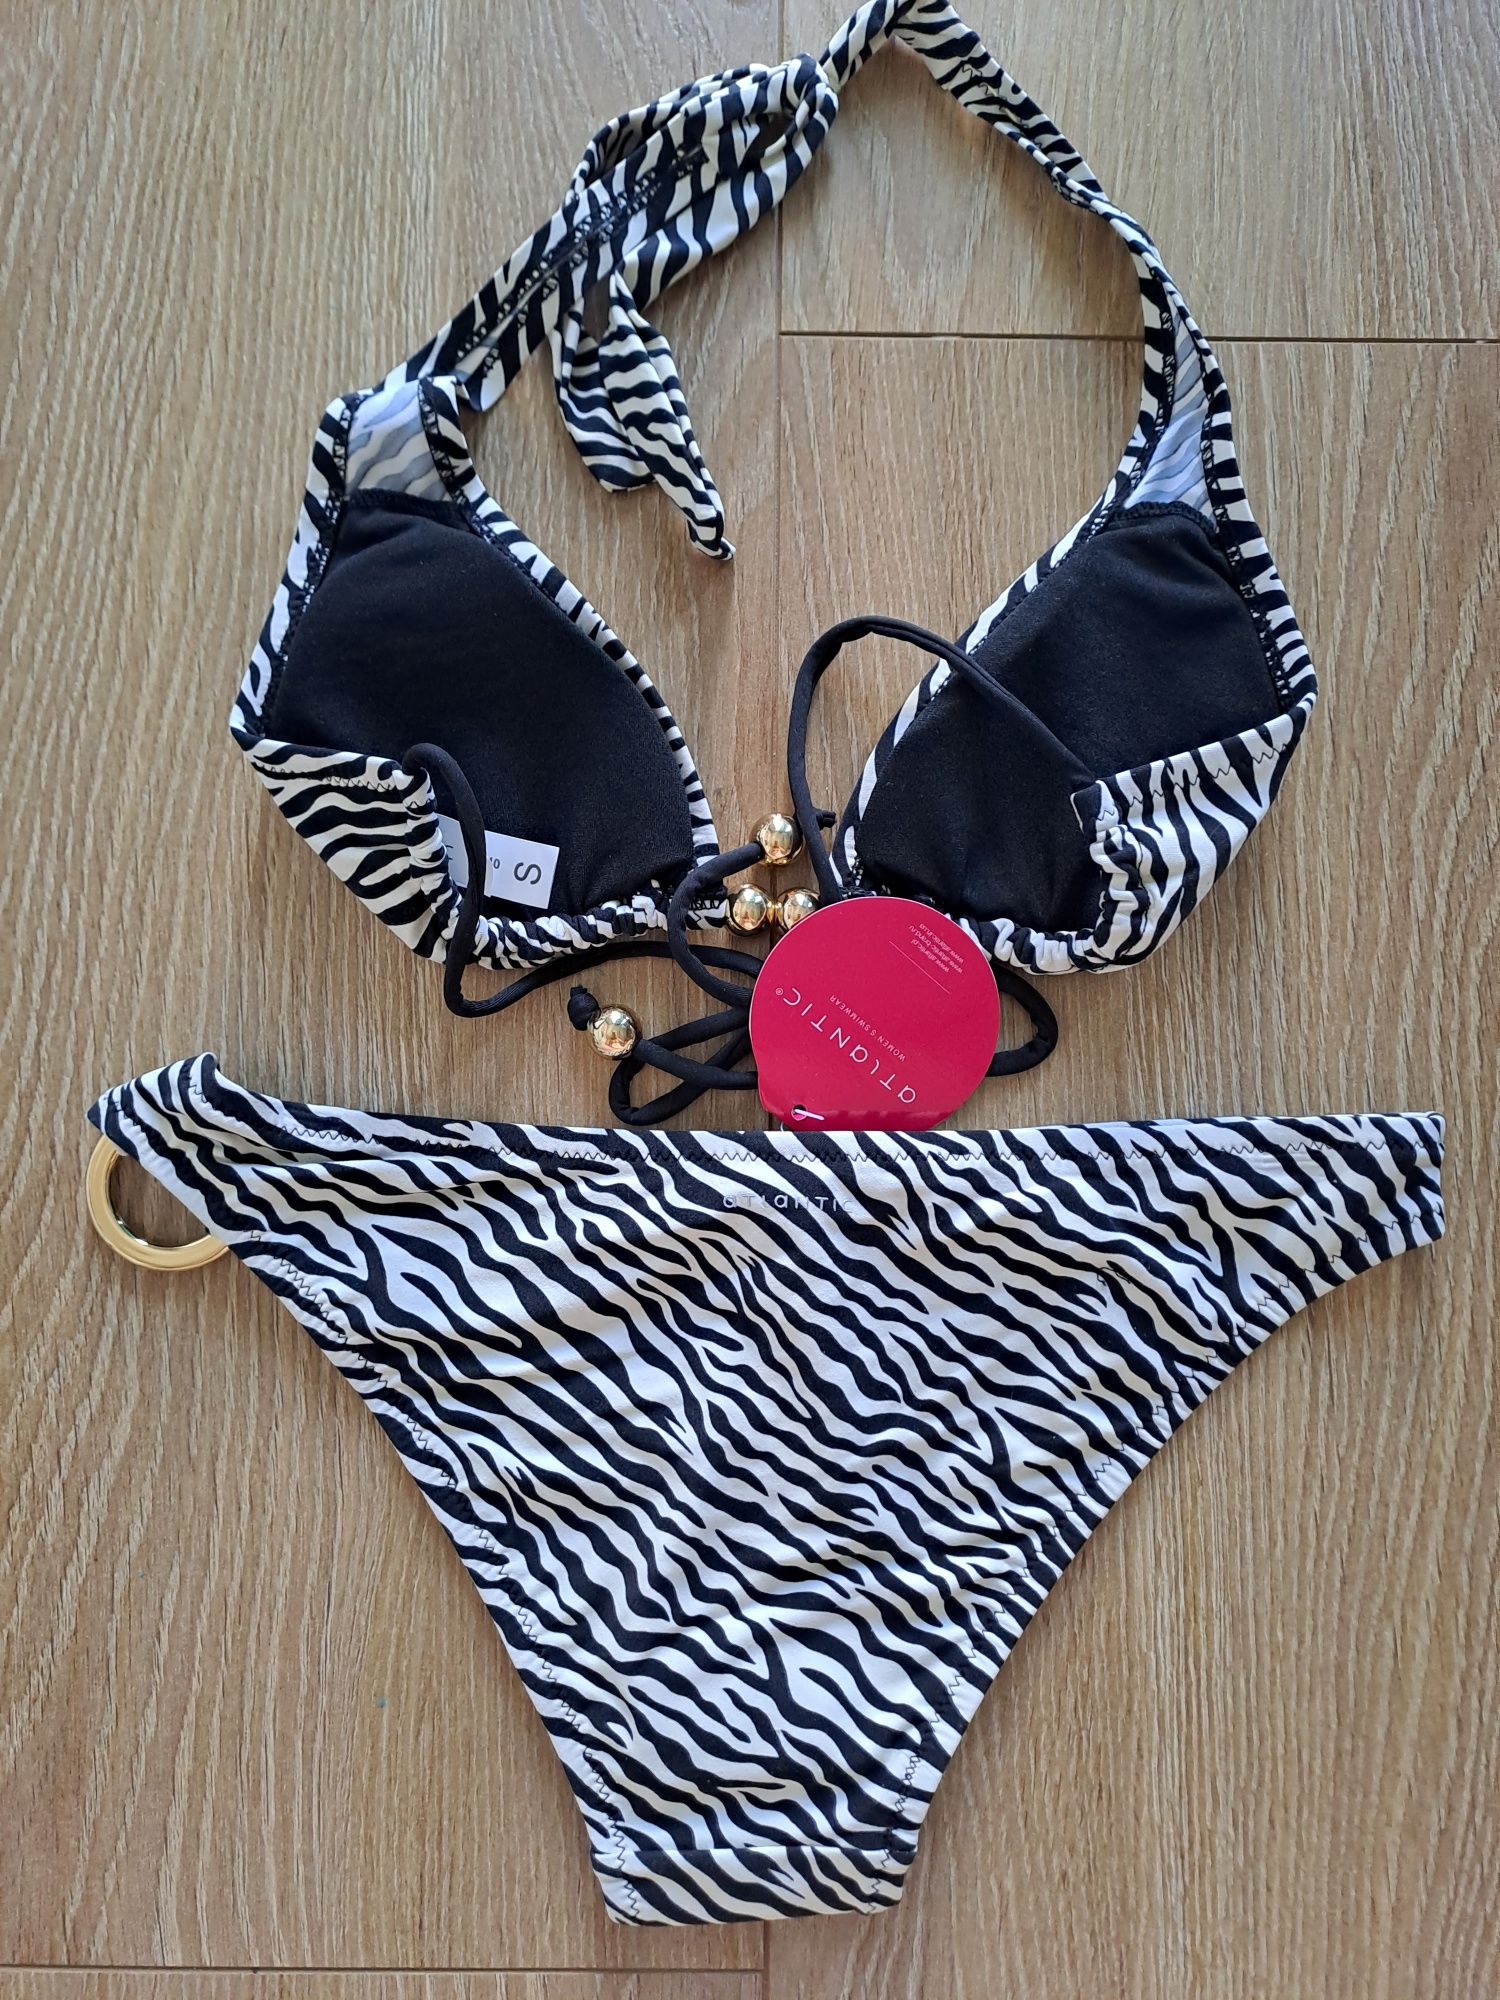 Dwuczęściowy kostium kąpielowy Atlantic, rozmiar S, bikini